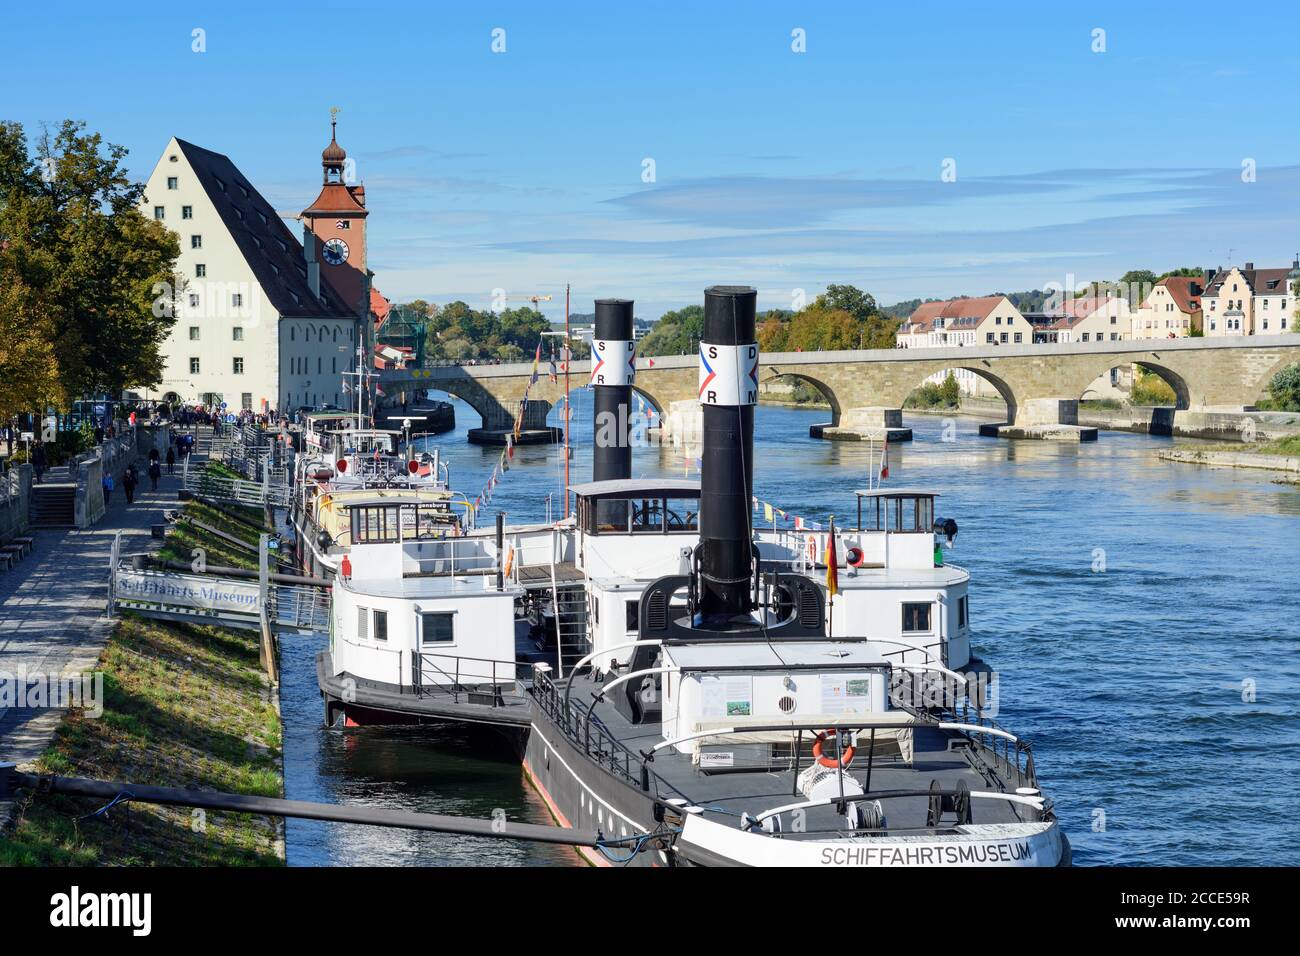 Regensburg, río Donau (Danubio), Steinerne Brücke (Puente de Piedra), barco museo Ruthof / Ersekcsanad en el Alto Palatinado, Baviera, Alemania Foto de stock